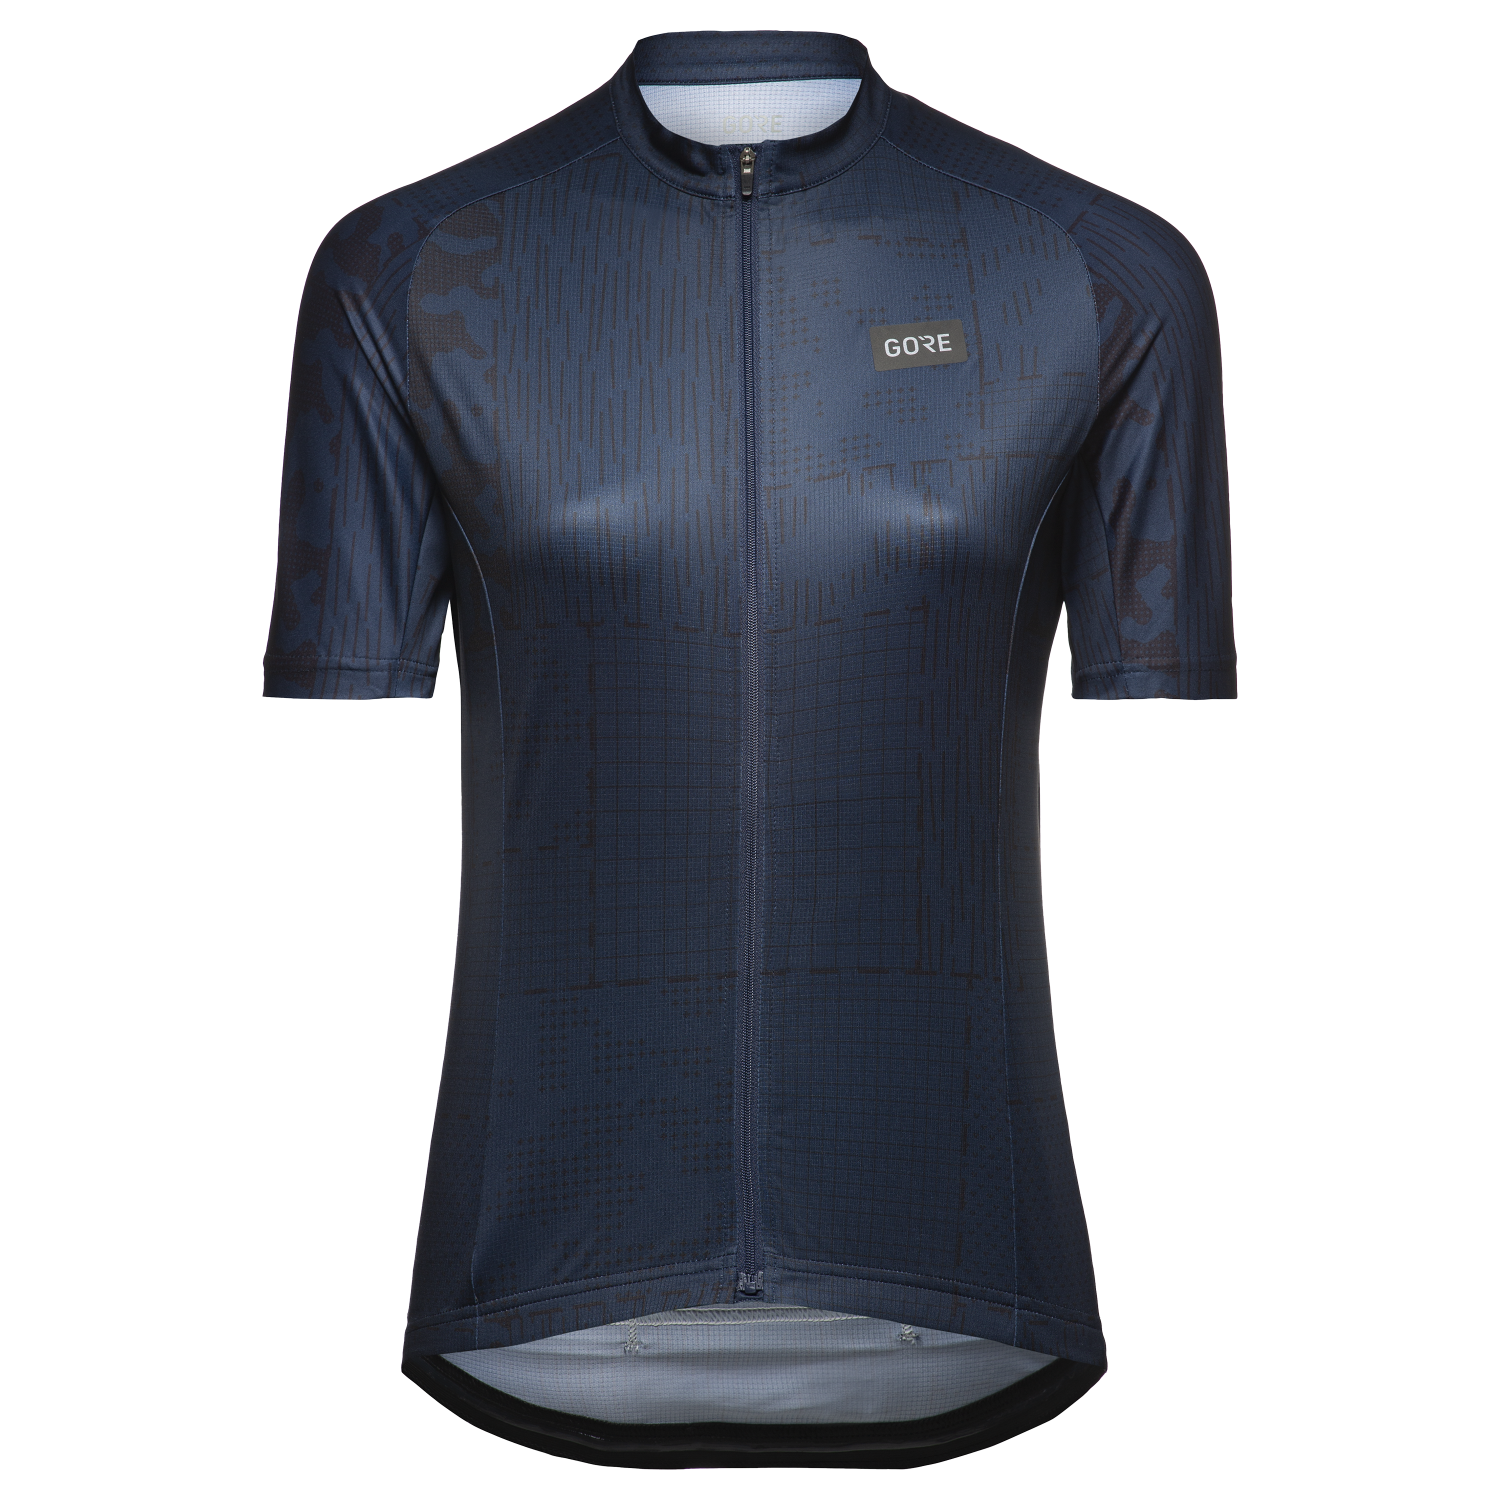 GOREWEAR Patch Camo Cycling Jersey Women's in Orbit Blue/Black | XS (0-2) | Form fit